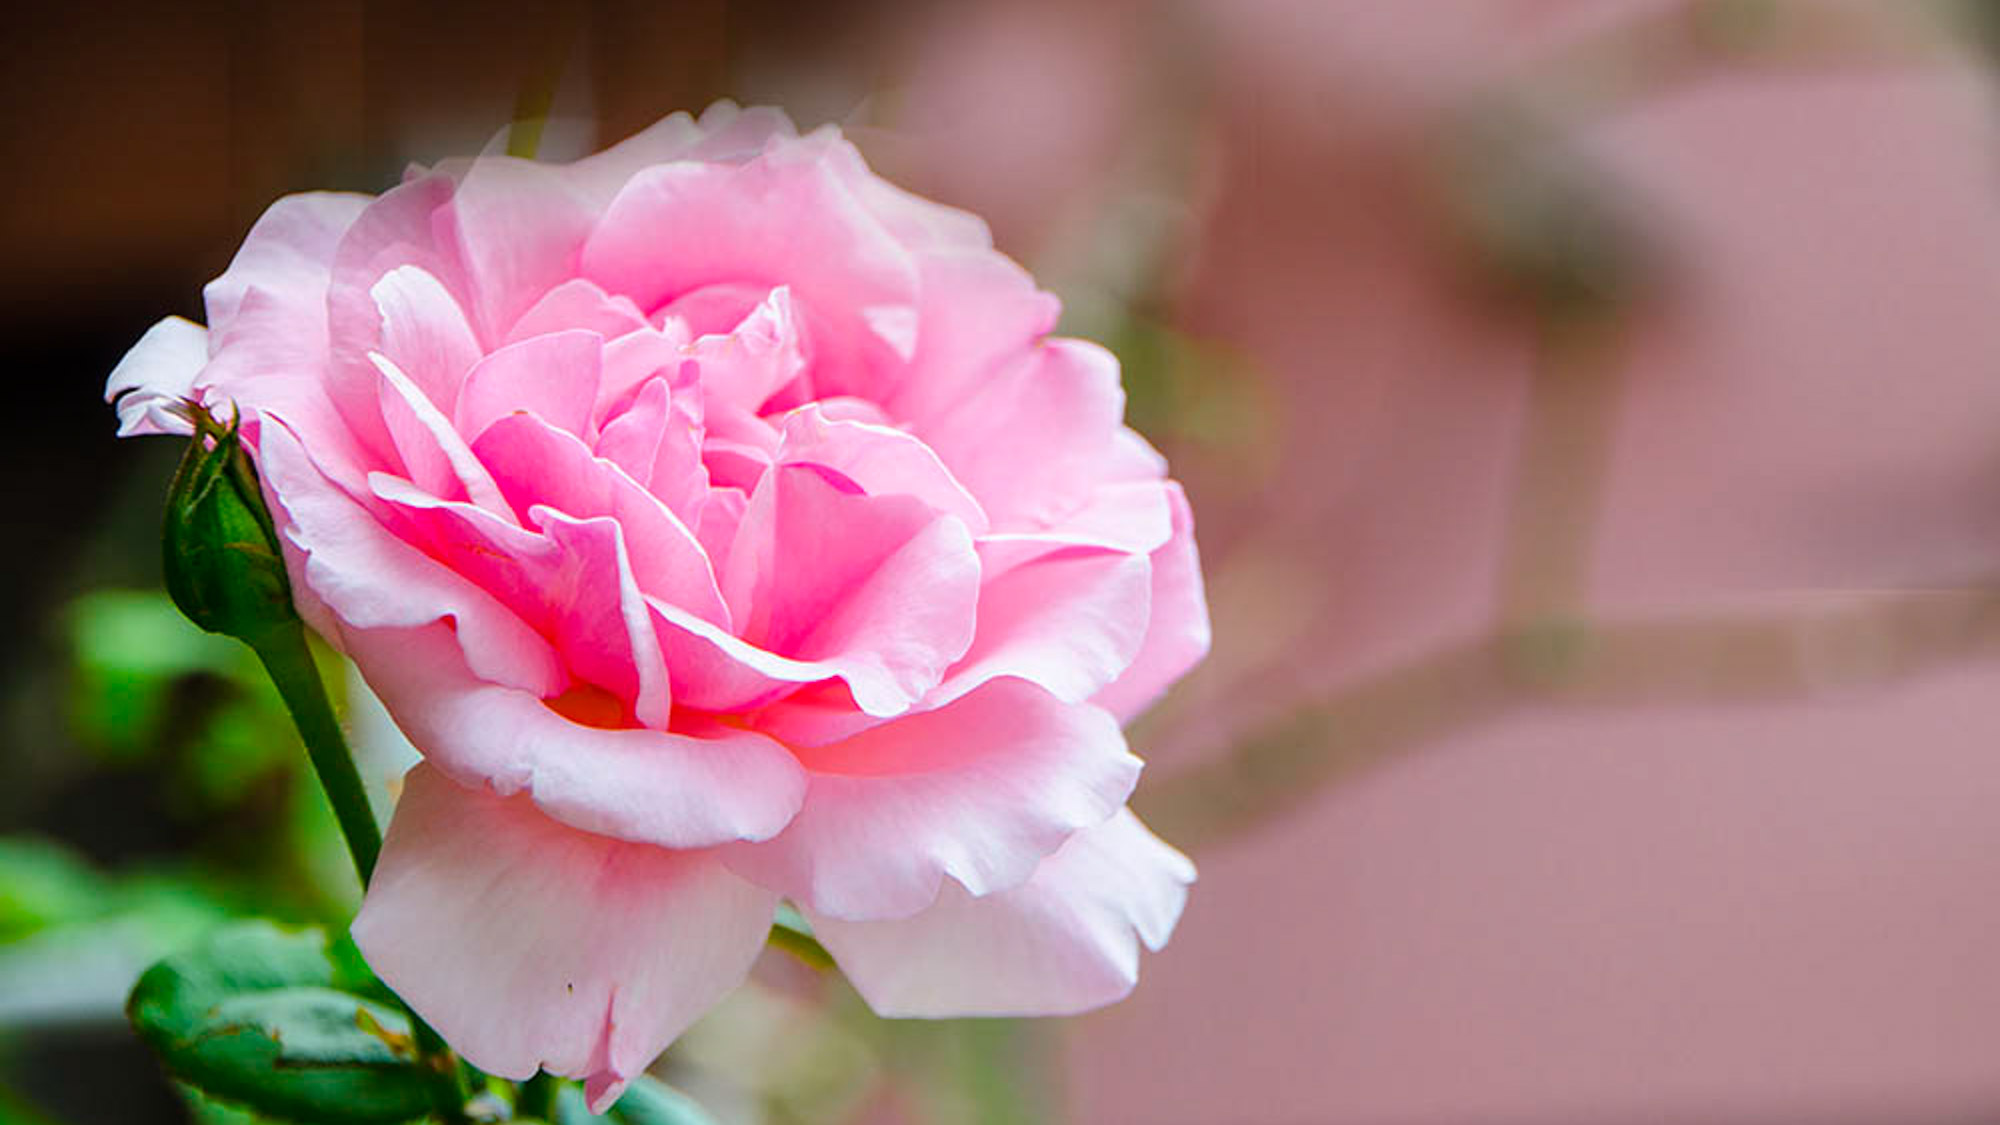 *【バラ摘み・バラ風呂体験】期間限定当館の庭に咲いているバラを摘みバラ風呂をお楽しみいただけます！